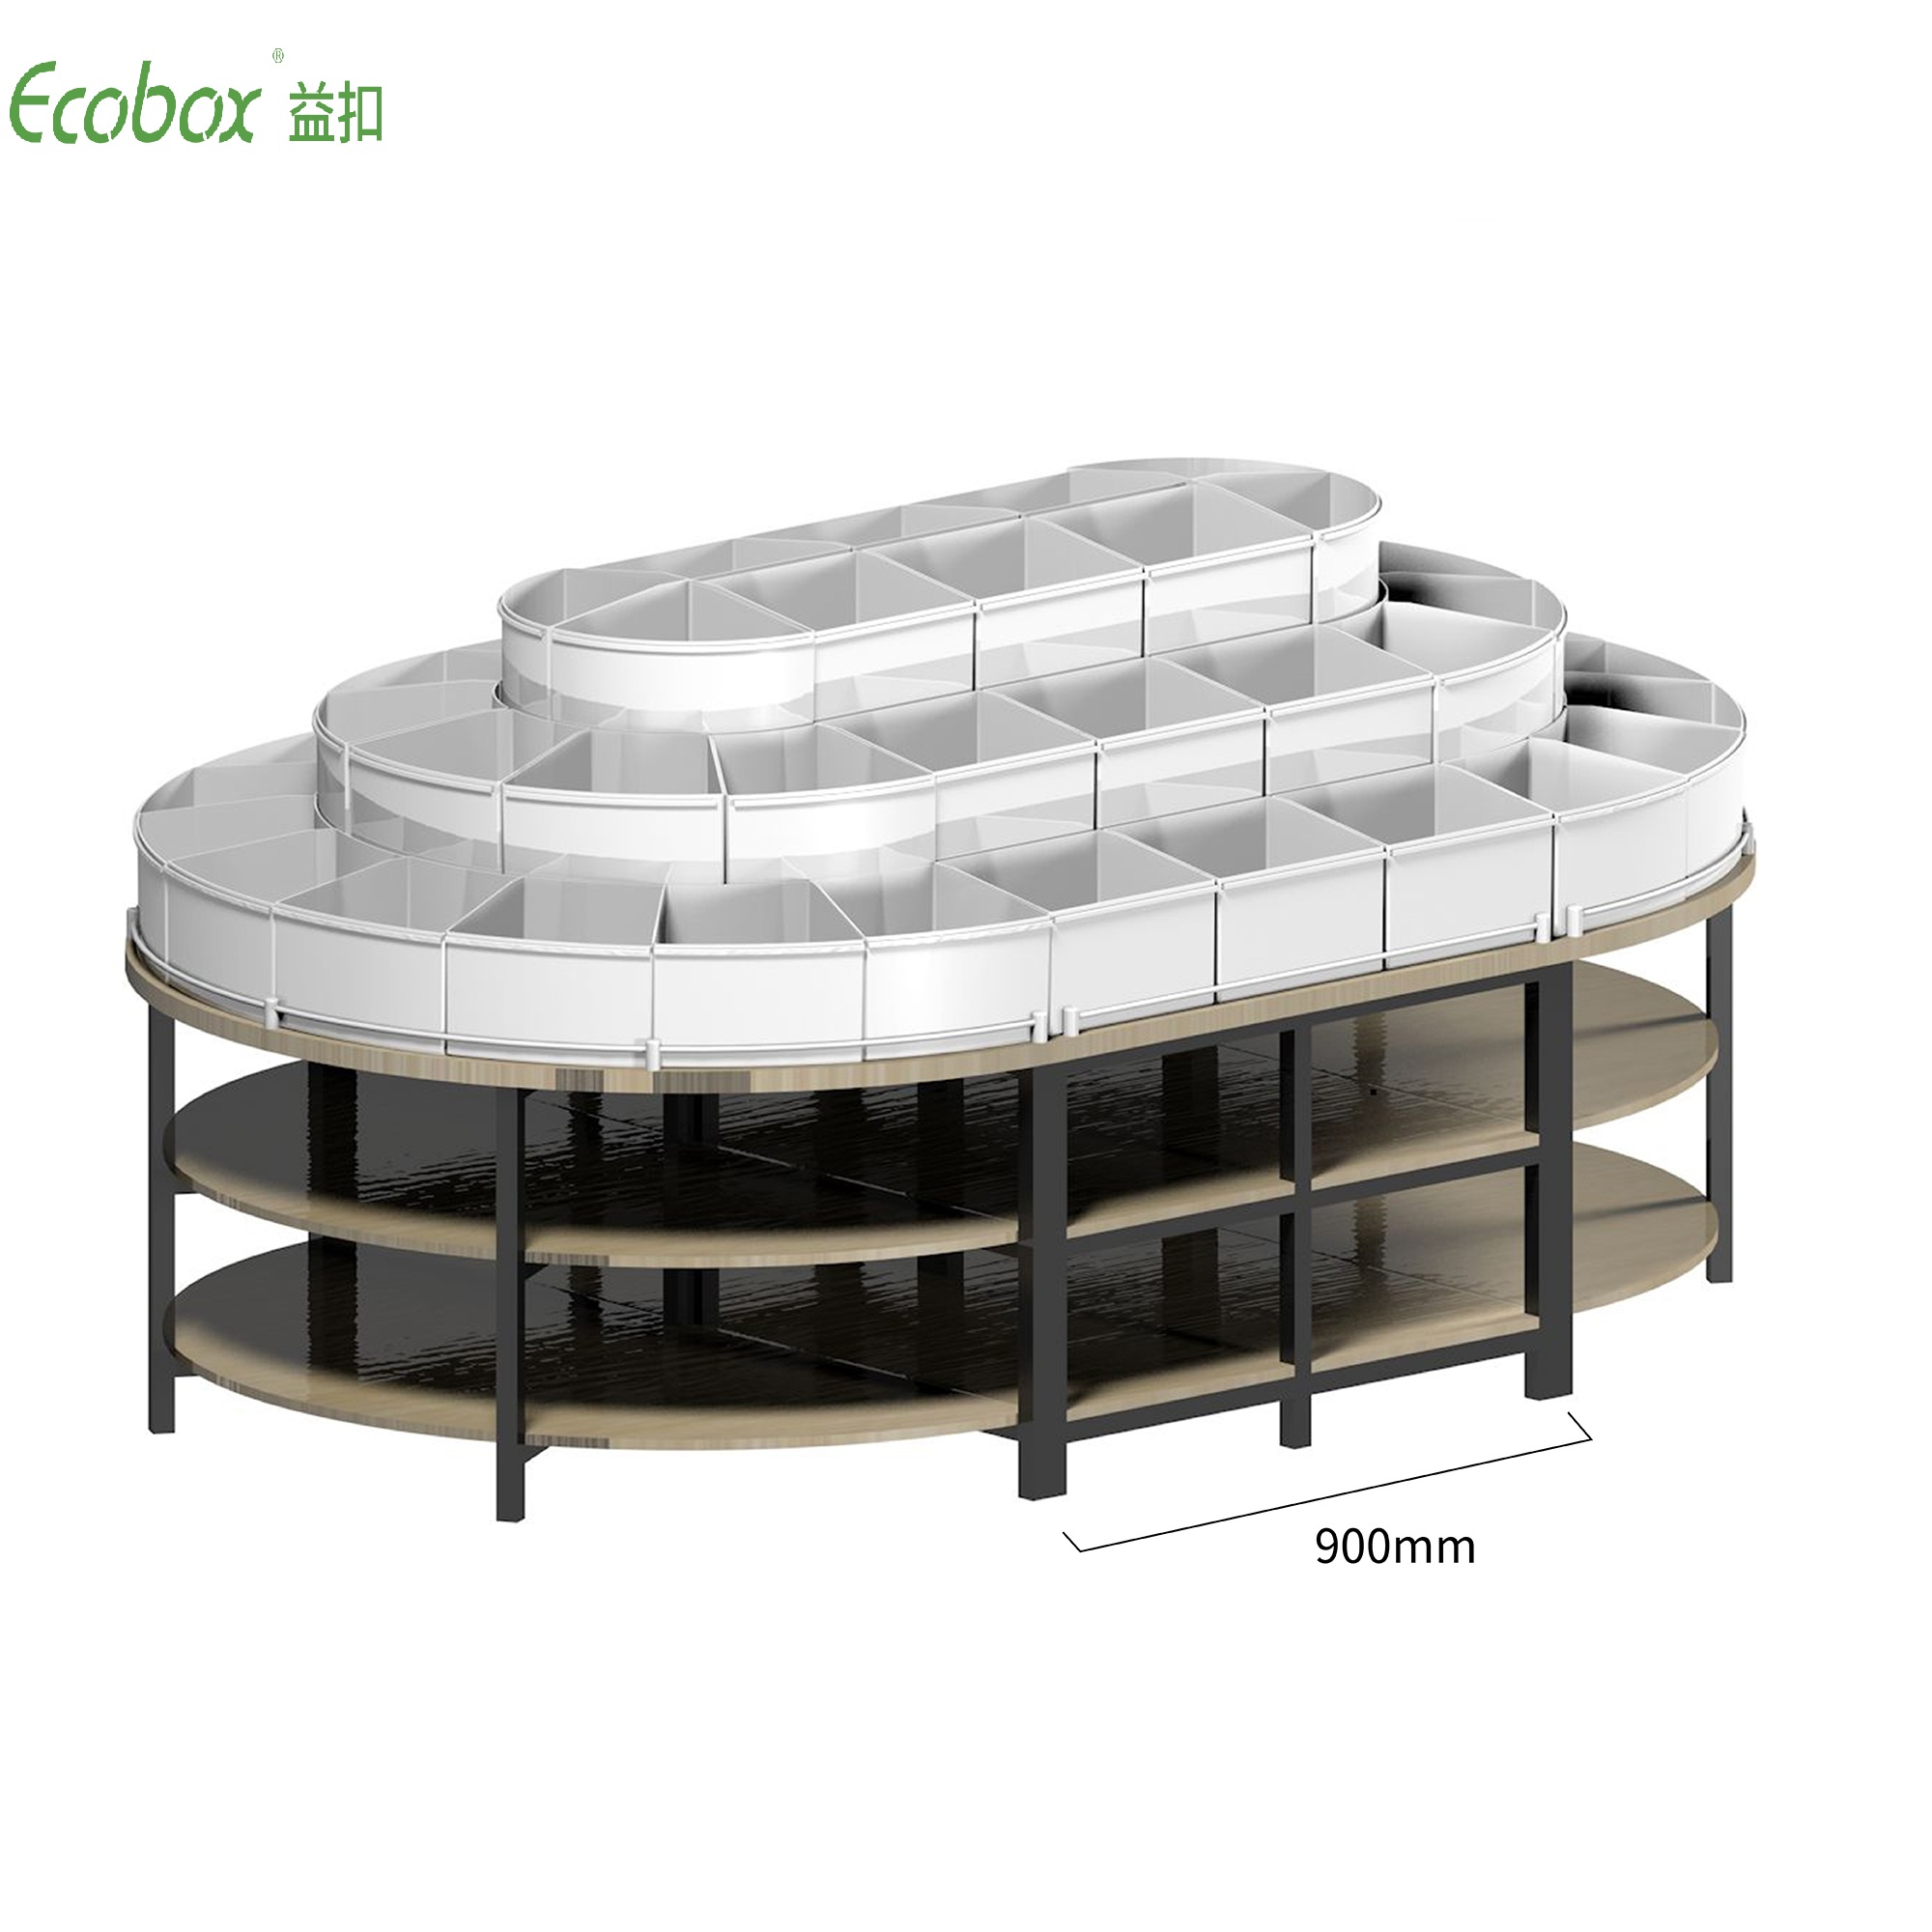 Étagère ronde de la série Ecobox G005 avec présentoirs d'aliments en vrac de supermarché pour bacs en vrac Ecobox